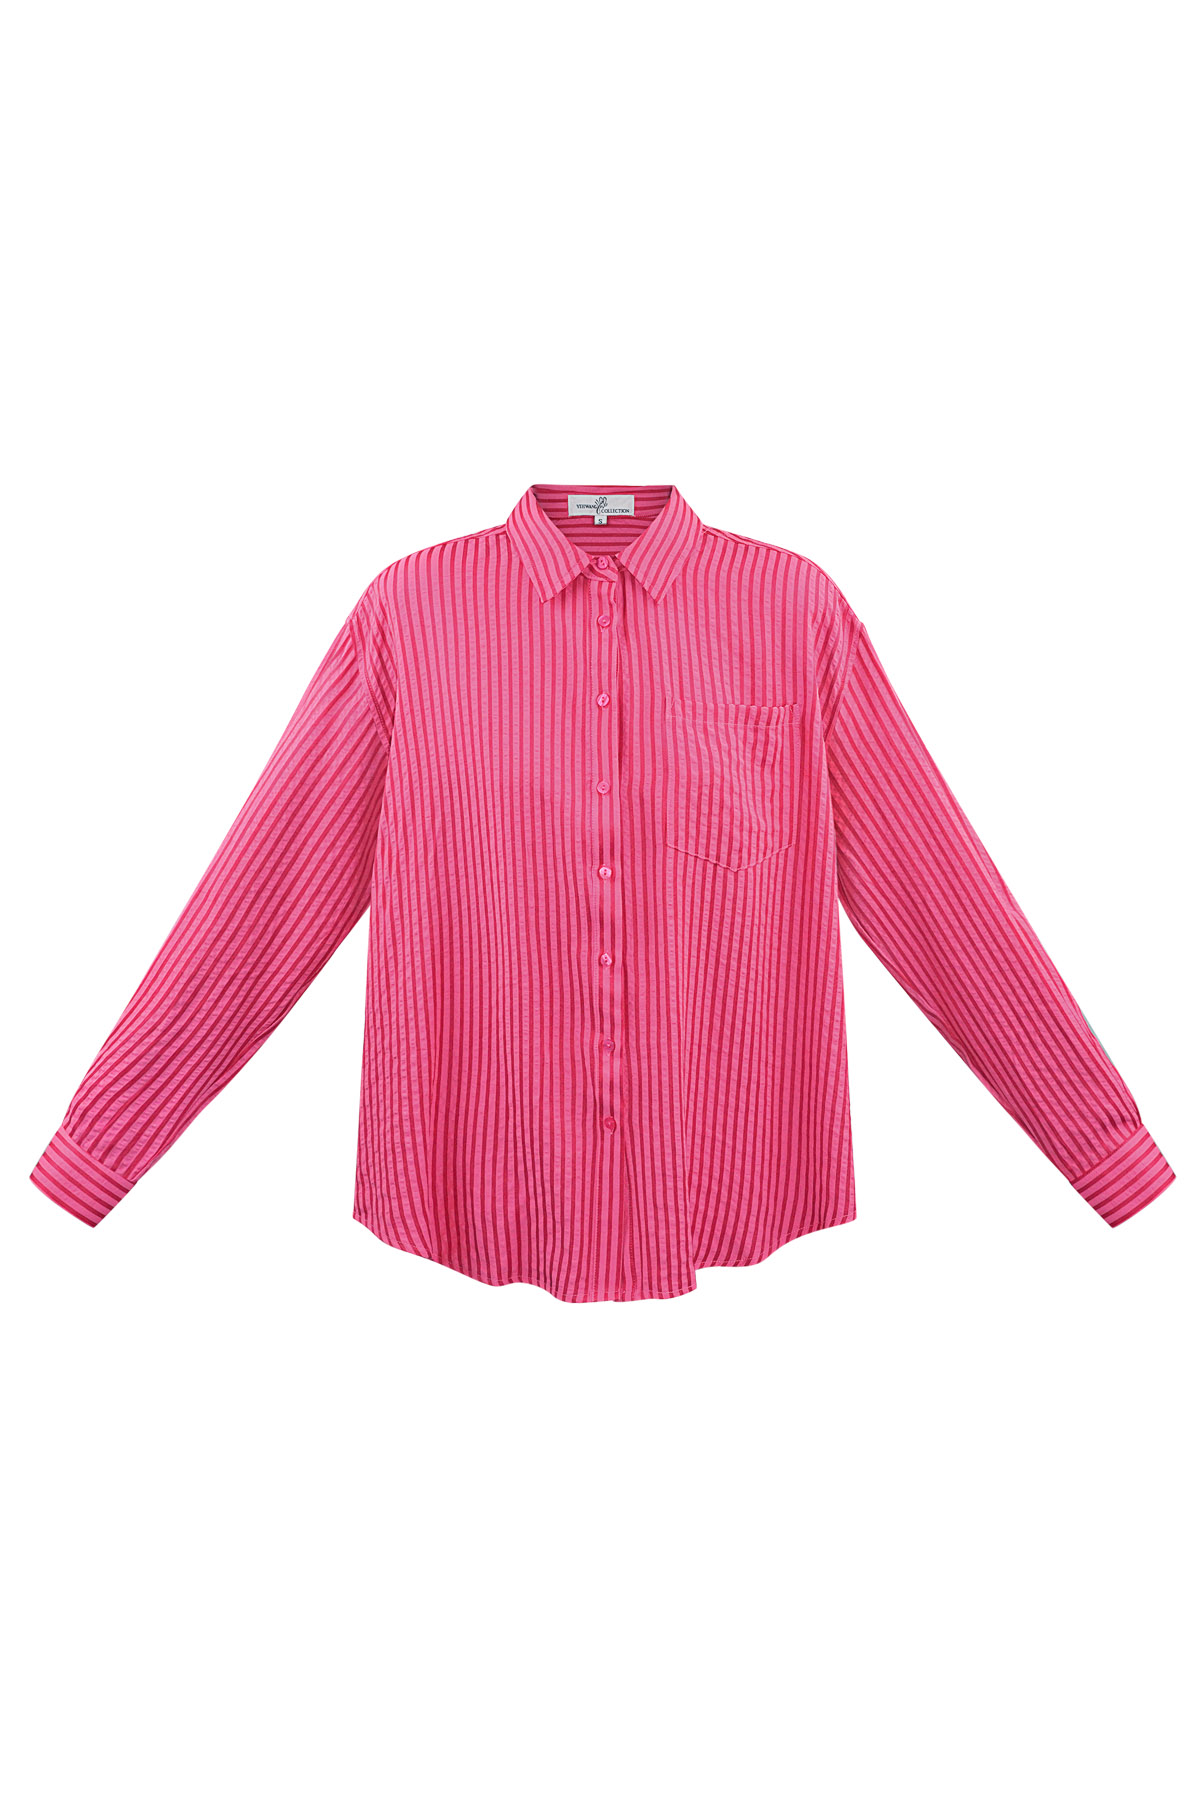 Gestreepte blouse - rood roze